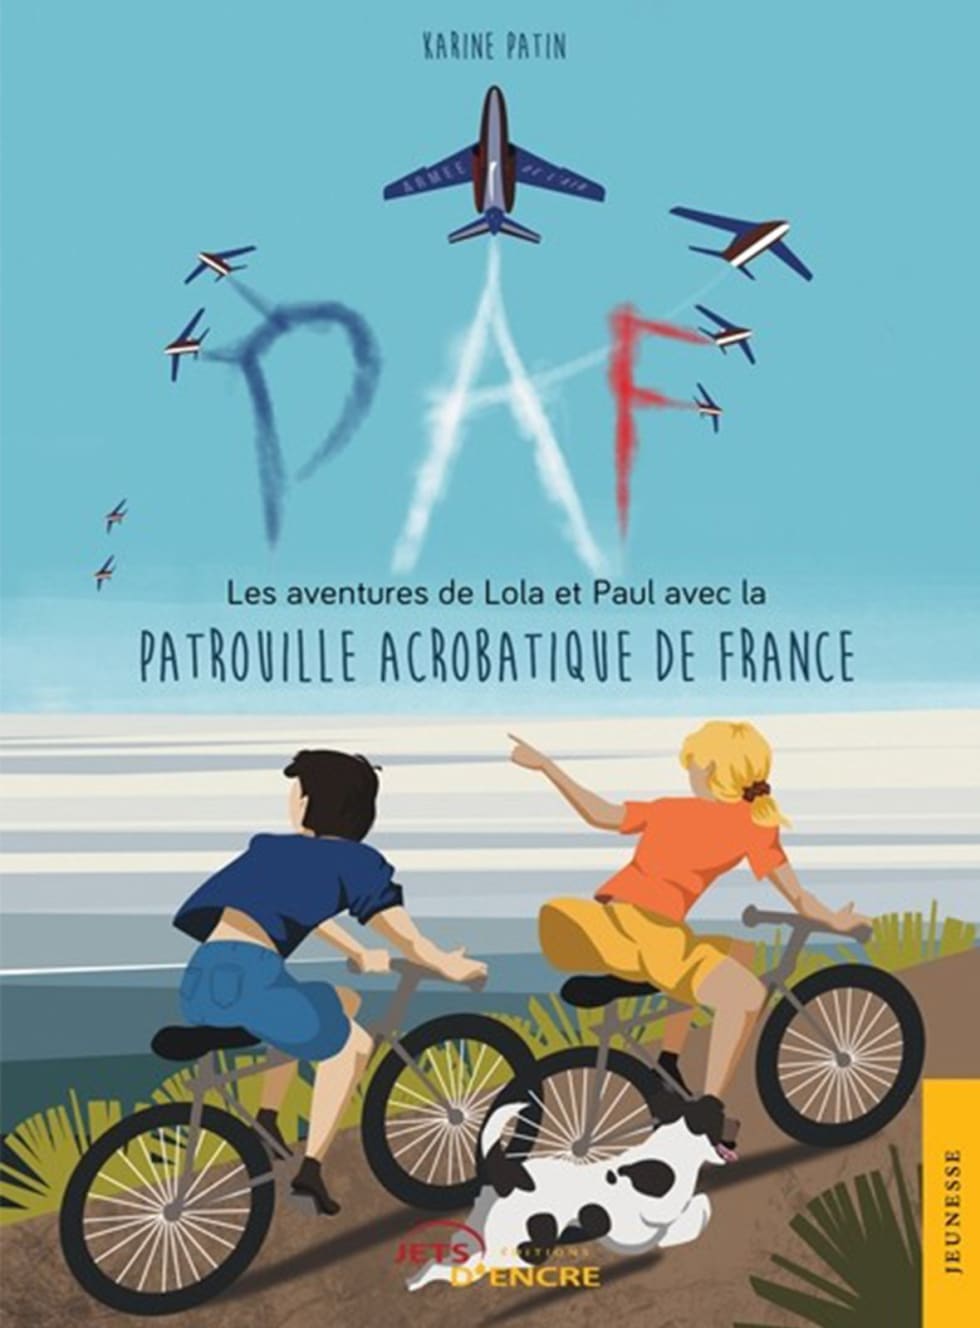 Les aventures de Lola et Paul avec la Patrouille Acrobatique de France